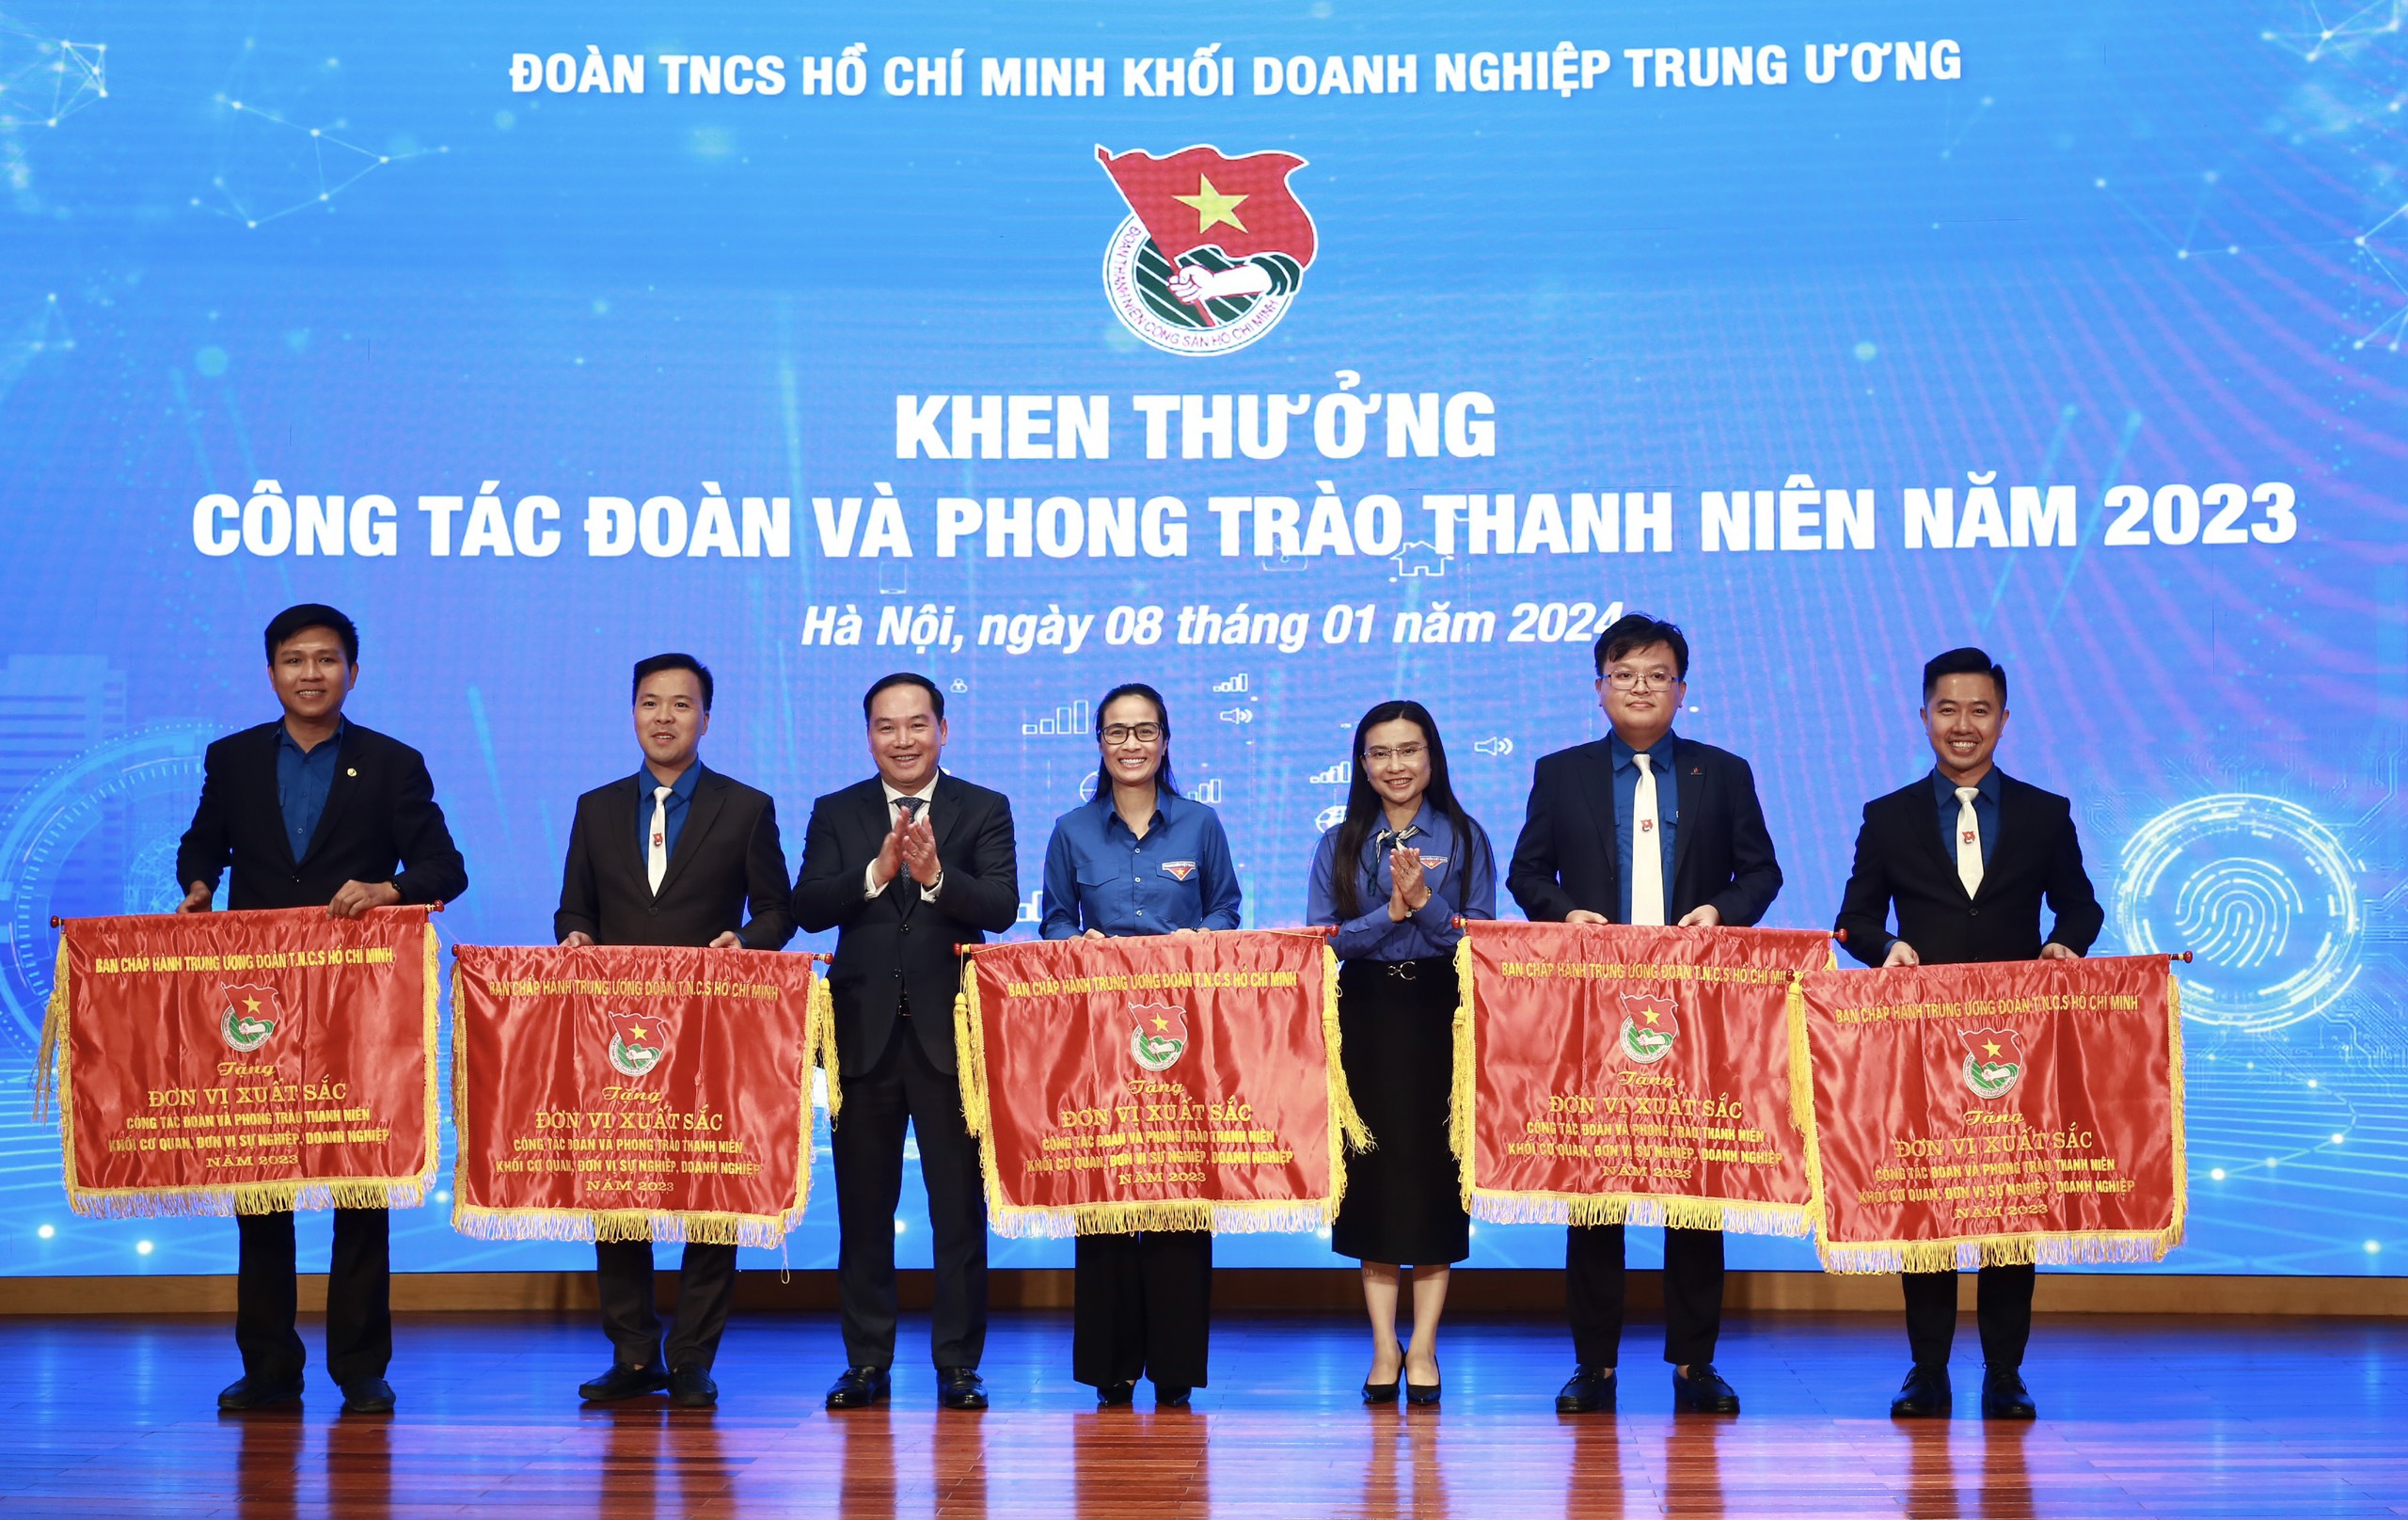 đồng chí Nguyễn Phạm Duy Trang - Bí thư BCH Trung ương Đoàn, Chủ tịch Hội đồng đội Trung ương tặng Cờ thi đua cho 5 đơn vị Đoàn cấp huyện 